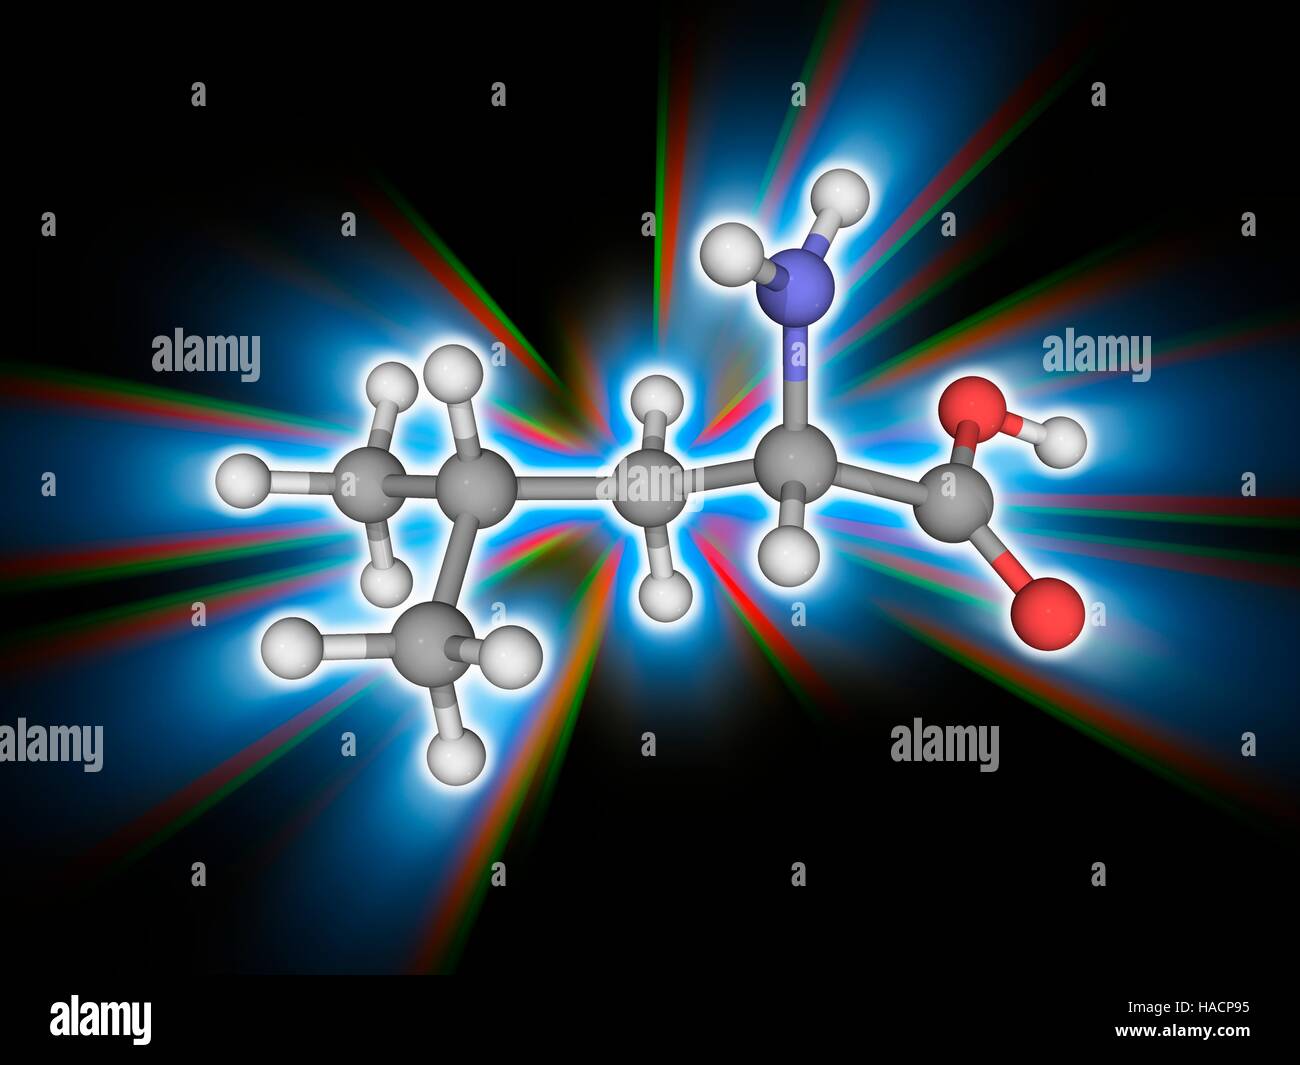 La leucina. Il modello molecolare del amminoacido essenziale leucina (C6.H13.N.O2). Classificato come un alfa-amminoacido leucina è trovato nelle uova, proteina di soia, alghe, Turchia, pollo, agnello, formaggio e pesce. Gli atomi sono rappresentati da sfere e sono codificati a colori: carbonio (grigio), Idrogeno (bianco), Azoto (blu) e ossigeno (rosso). Illustrazione. Foto Stock